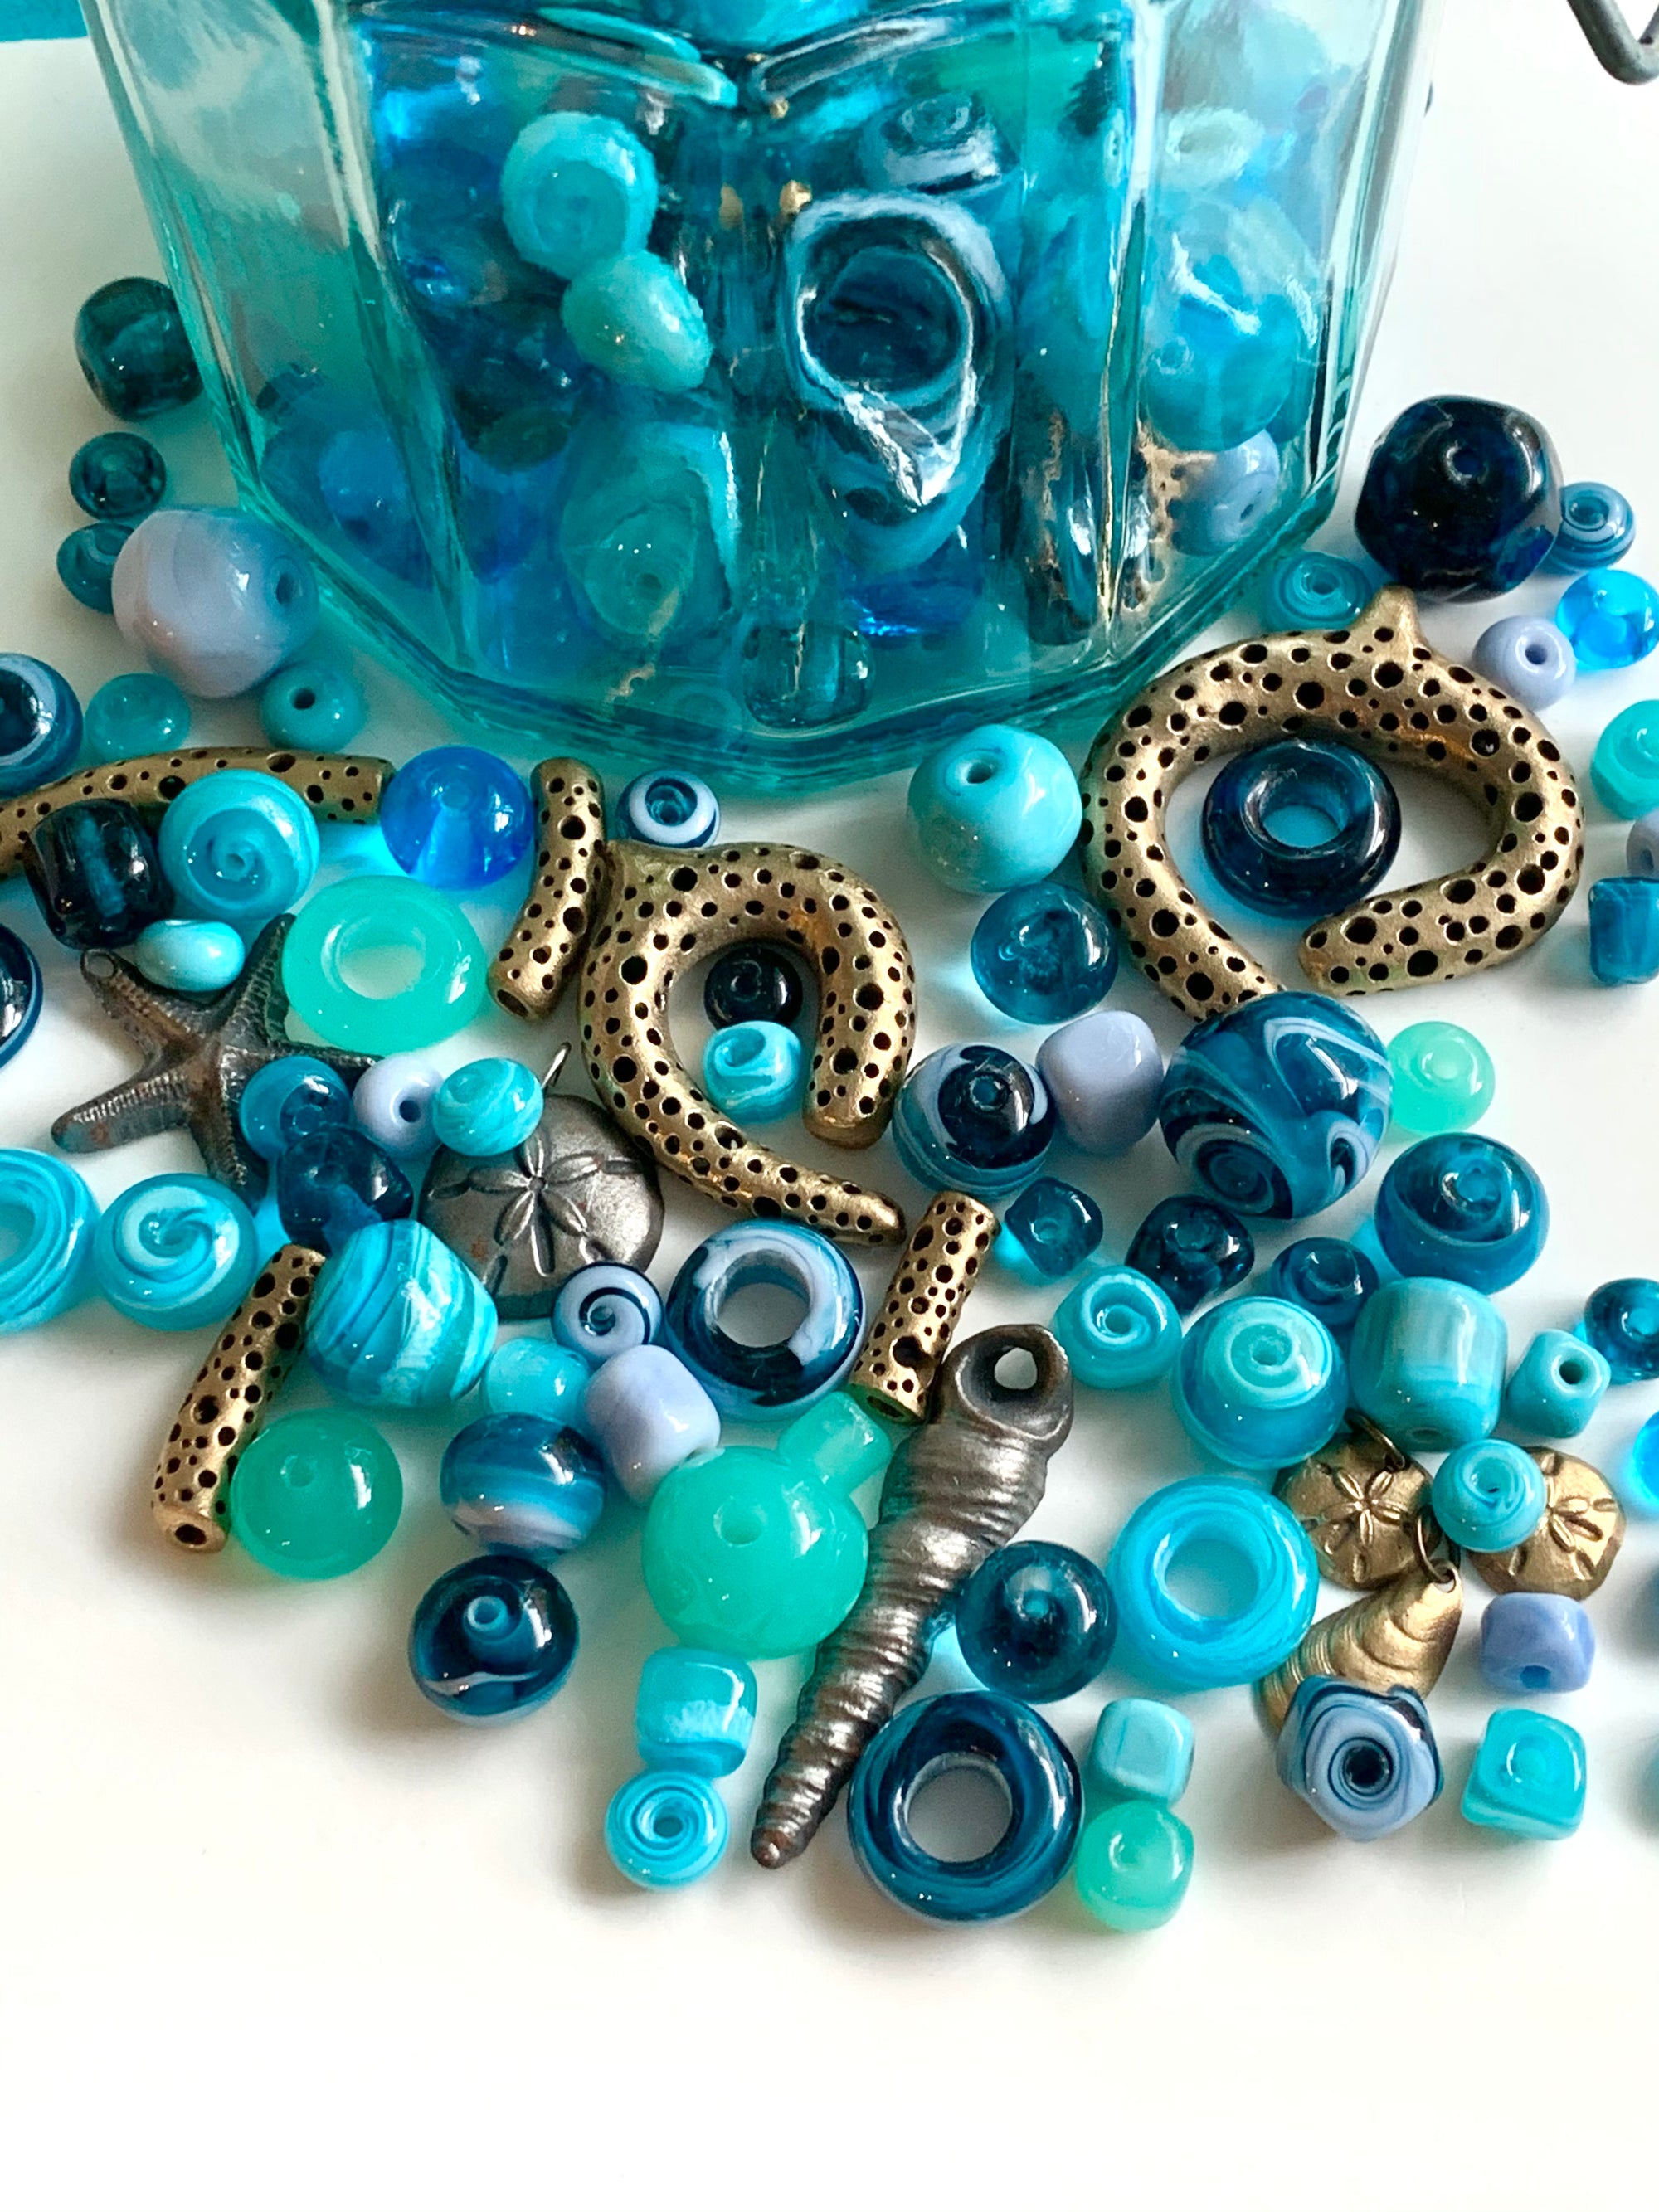 Mermaid ocean depths of beads